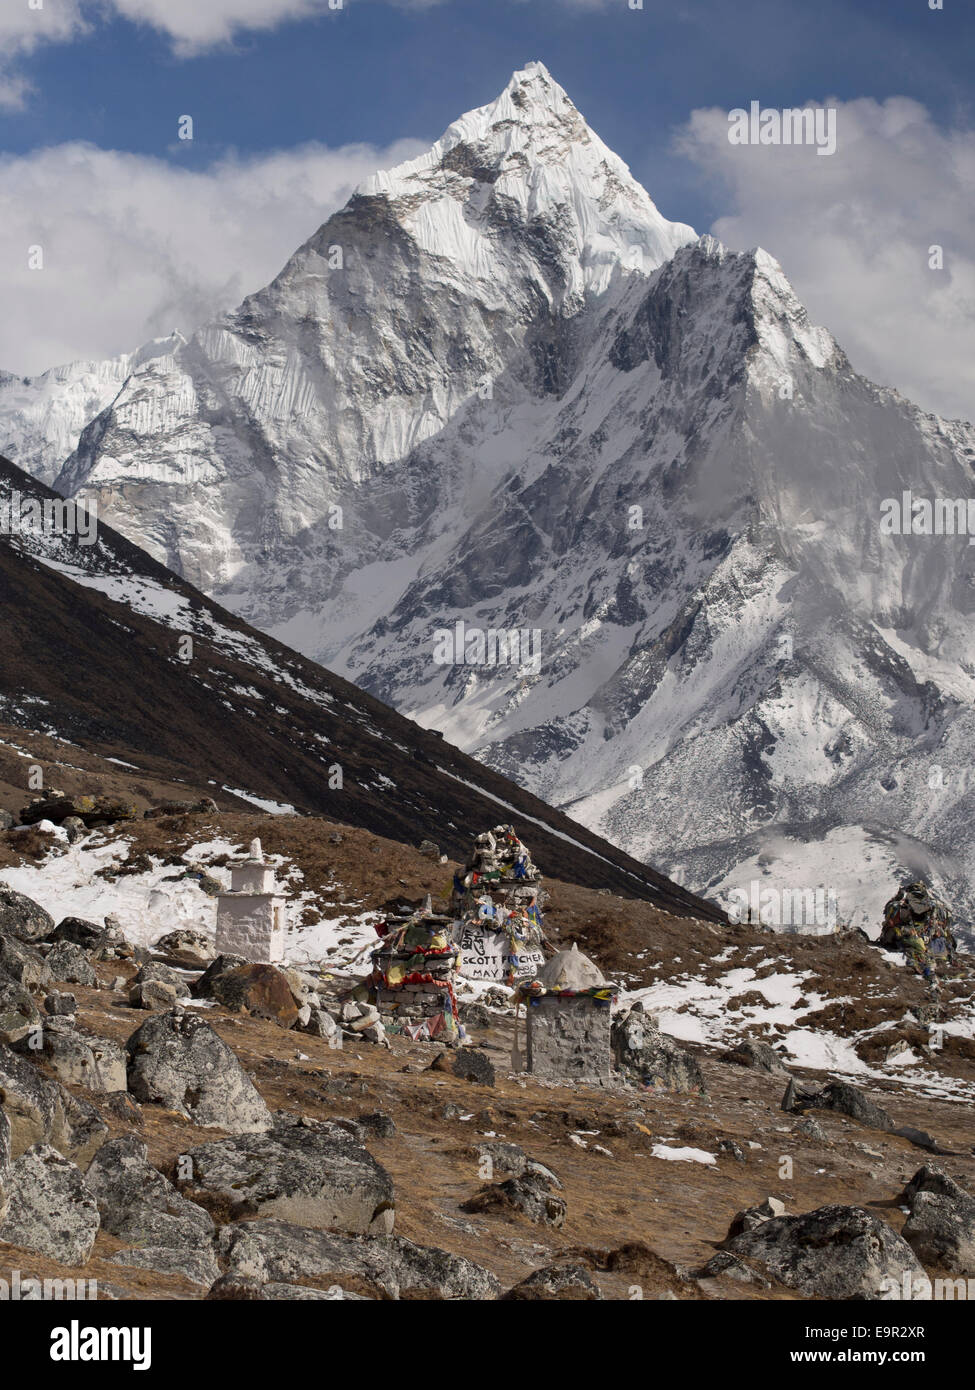 Monter l'Ama Dablam et monument commémoratif à chef de l'expédition de Scott Fischer, qui sont morts dans la catastrophe de l'Everest Everest 1996, région, au Népal. Banque D'Images